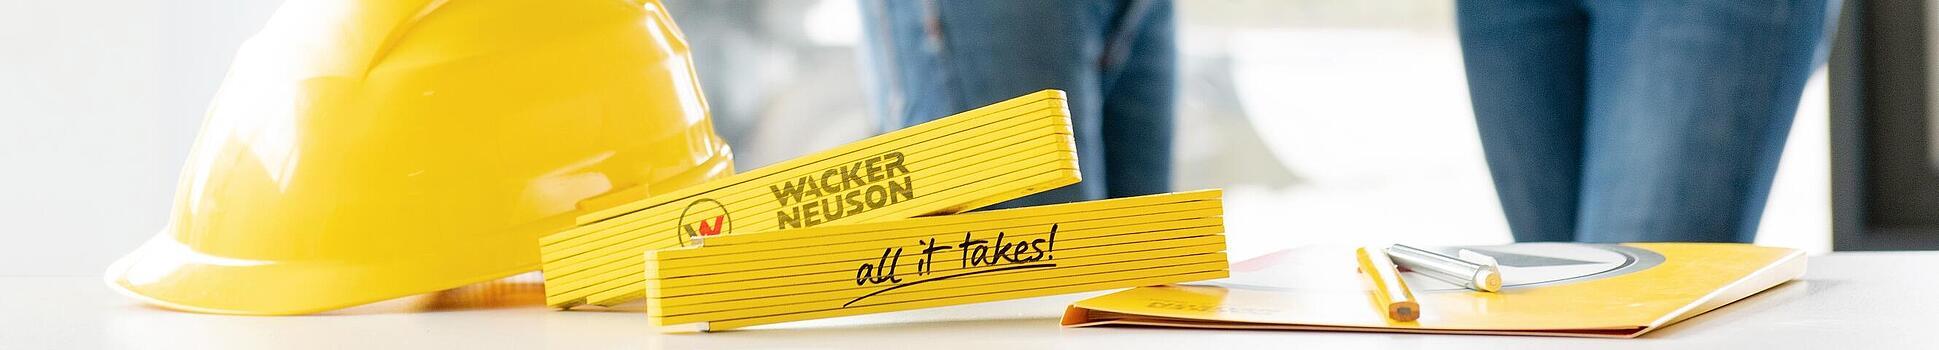 Los artículos promocionales de Wacker Neuson están sobre una mesa en primer plano, con los empleados de Wacker Neuson de fondo.